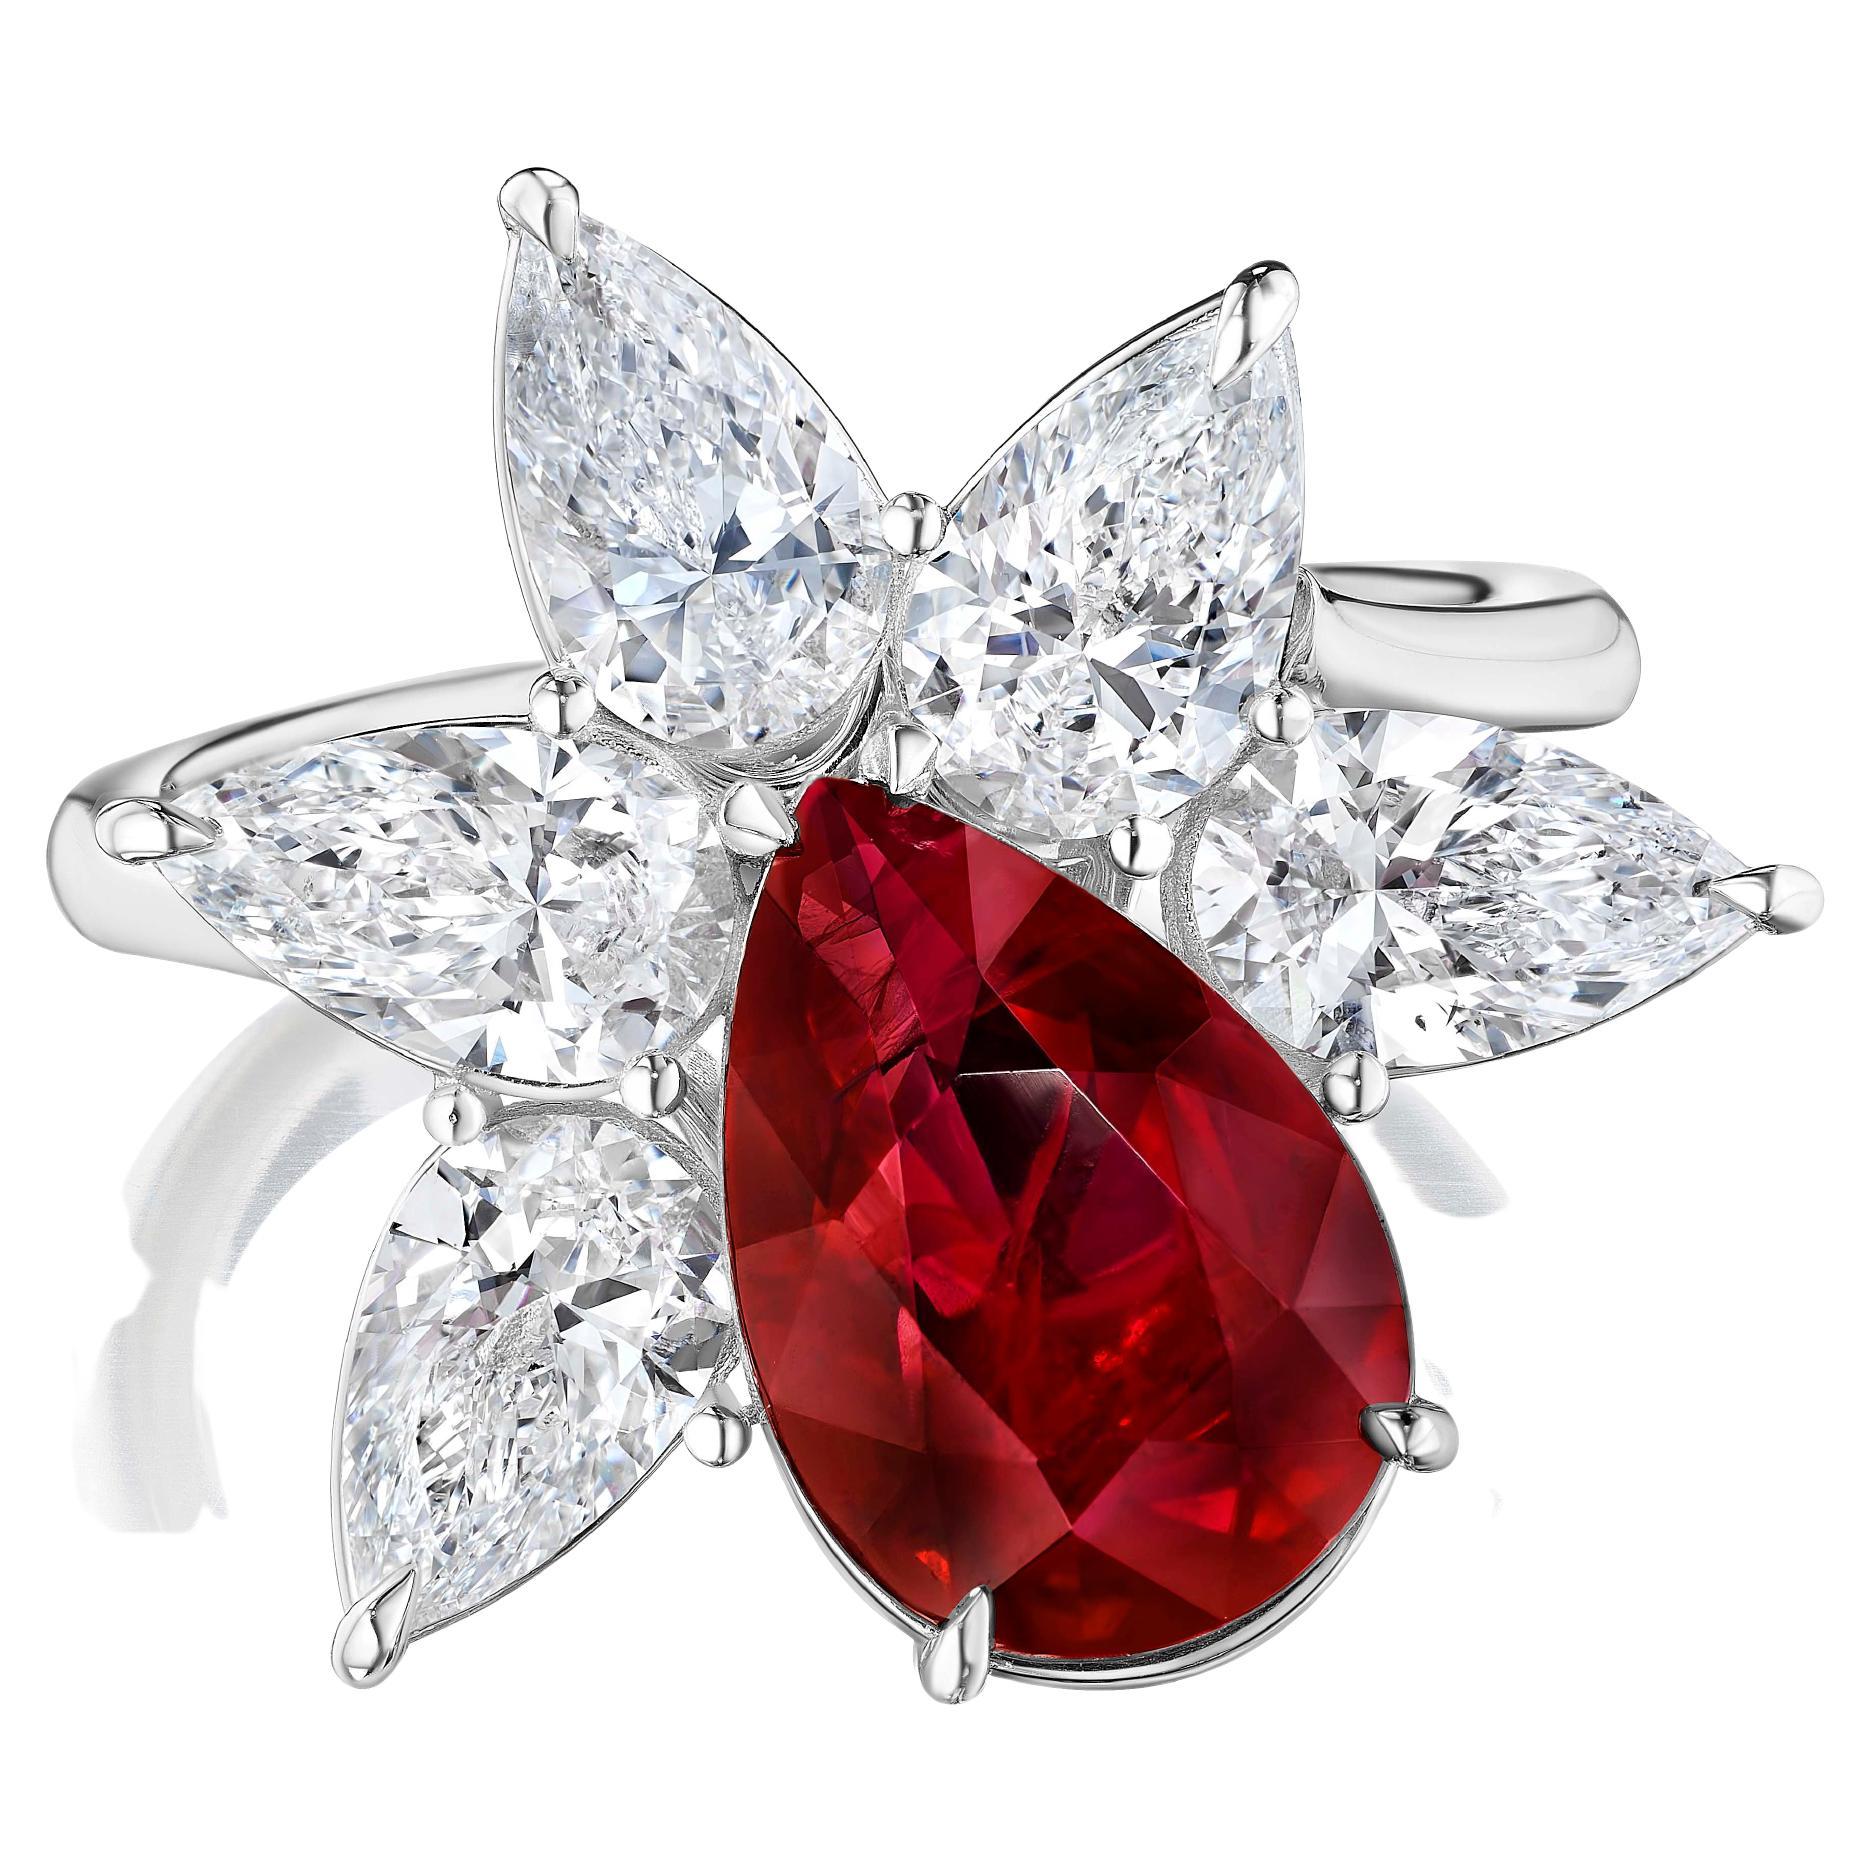 Wunderschöner birnenförmiger Rubin mit einem Gewicht von 4,03 Karat, zertifiziert von GIA als taubenblutfarben. Erhitzt, Burma Ruby.

Die Diamanten wiegen 2,52 Karat. Von GIA als D Farbe VS2-SI1 Reinheit eingestuft.

Wahrlich ein in jeder Hinsicht